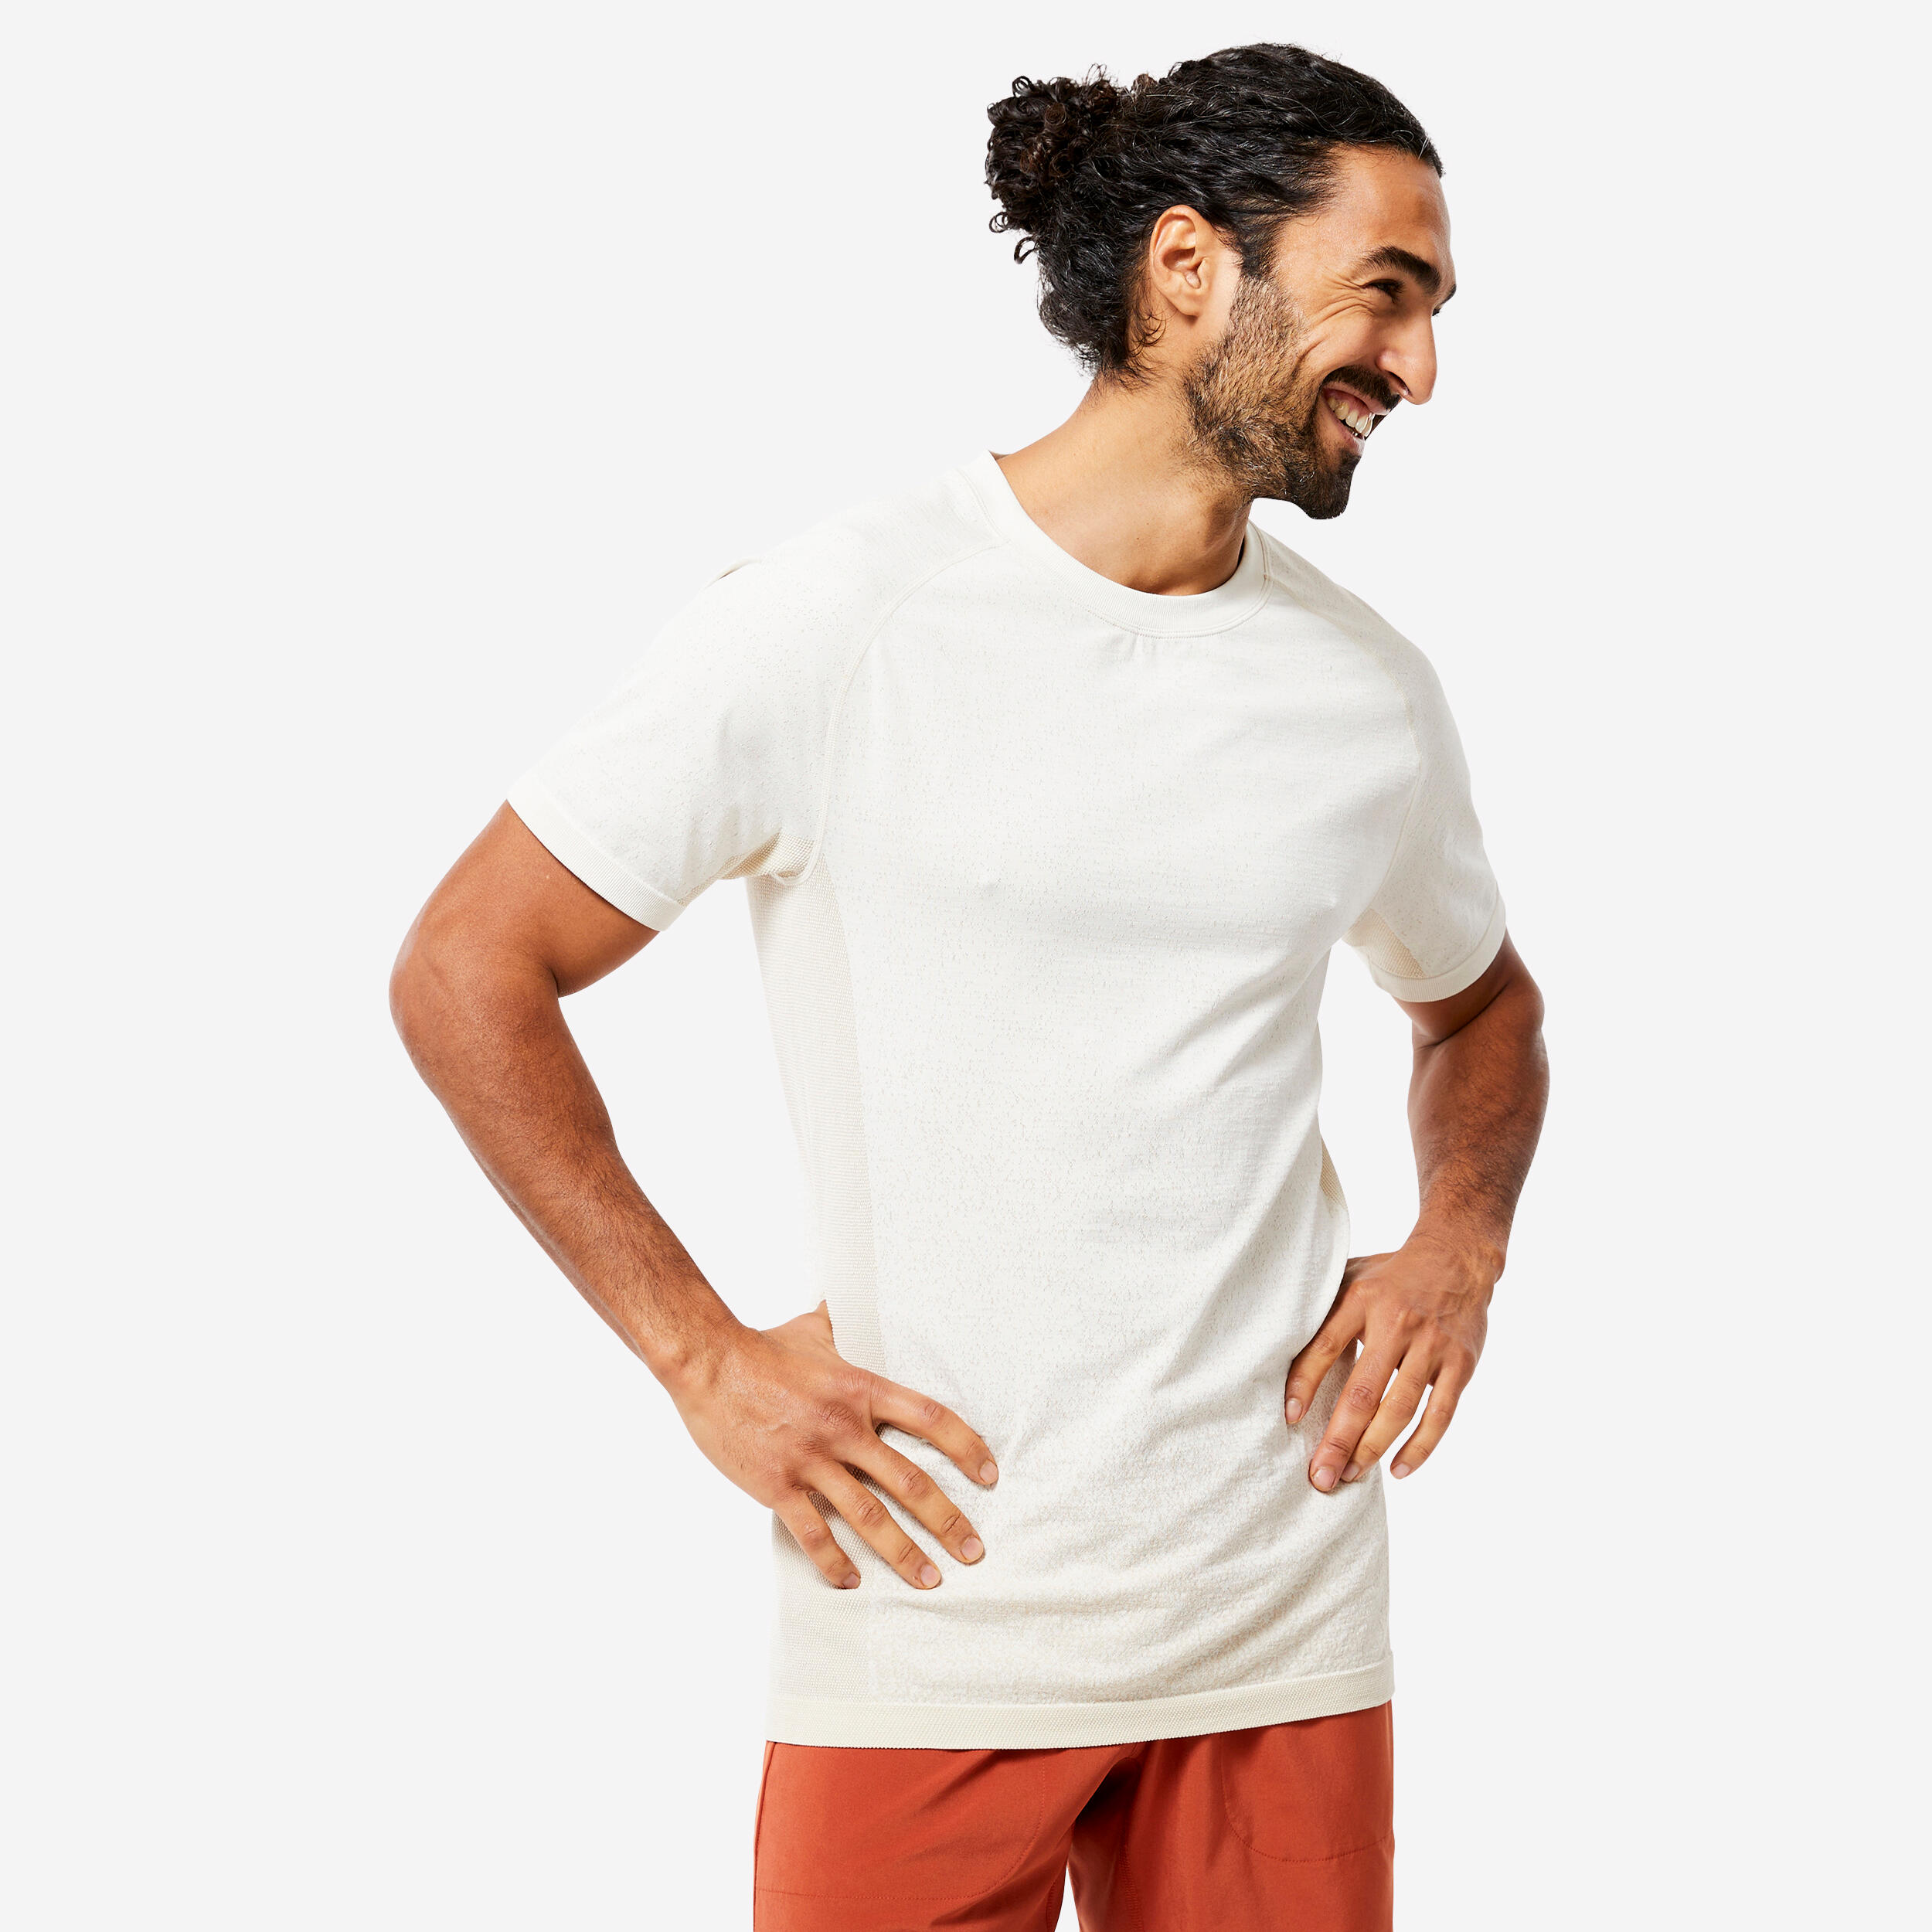 KIMJALY Men's Seamless Short-Sleeved Dynamic Yoga T-Shirt - White